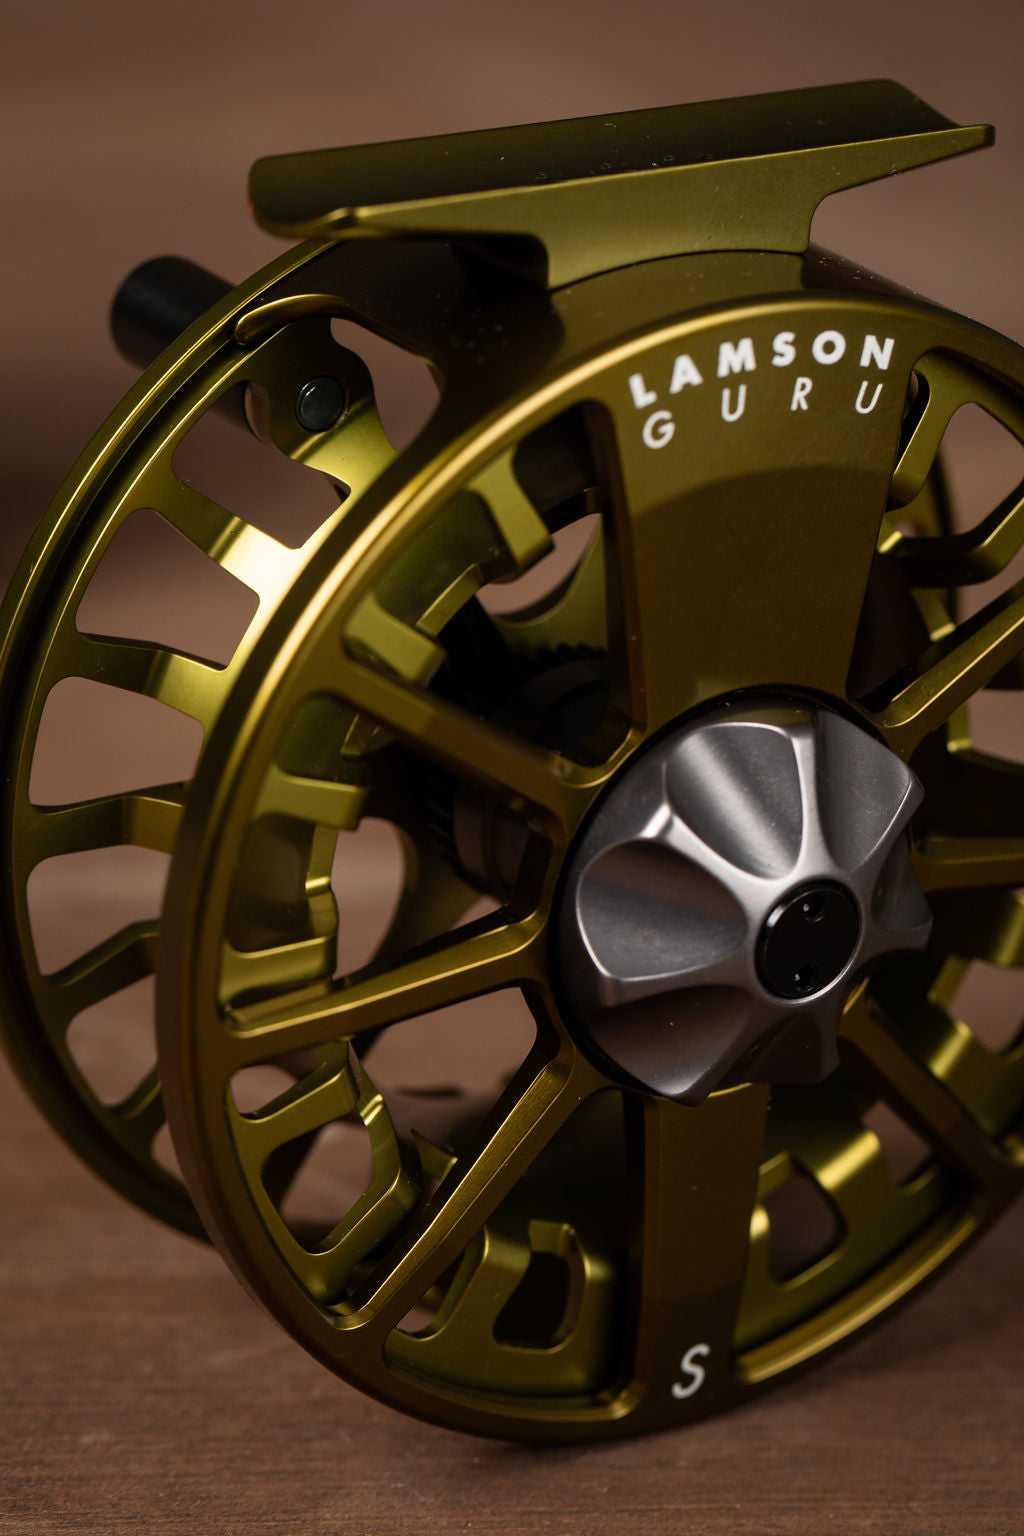 Lamson Guru S Fly Reel SPOOL, Buy Spare Spools For Lamson Guru S Fly Reels